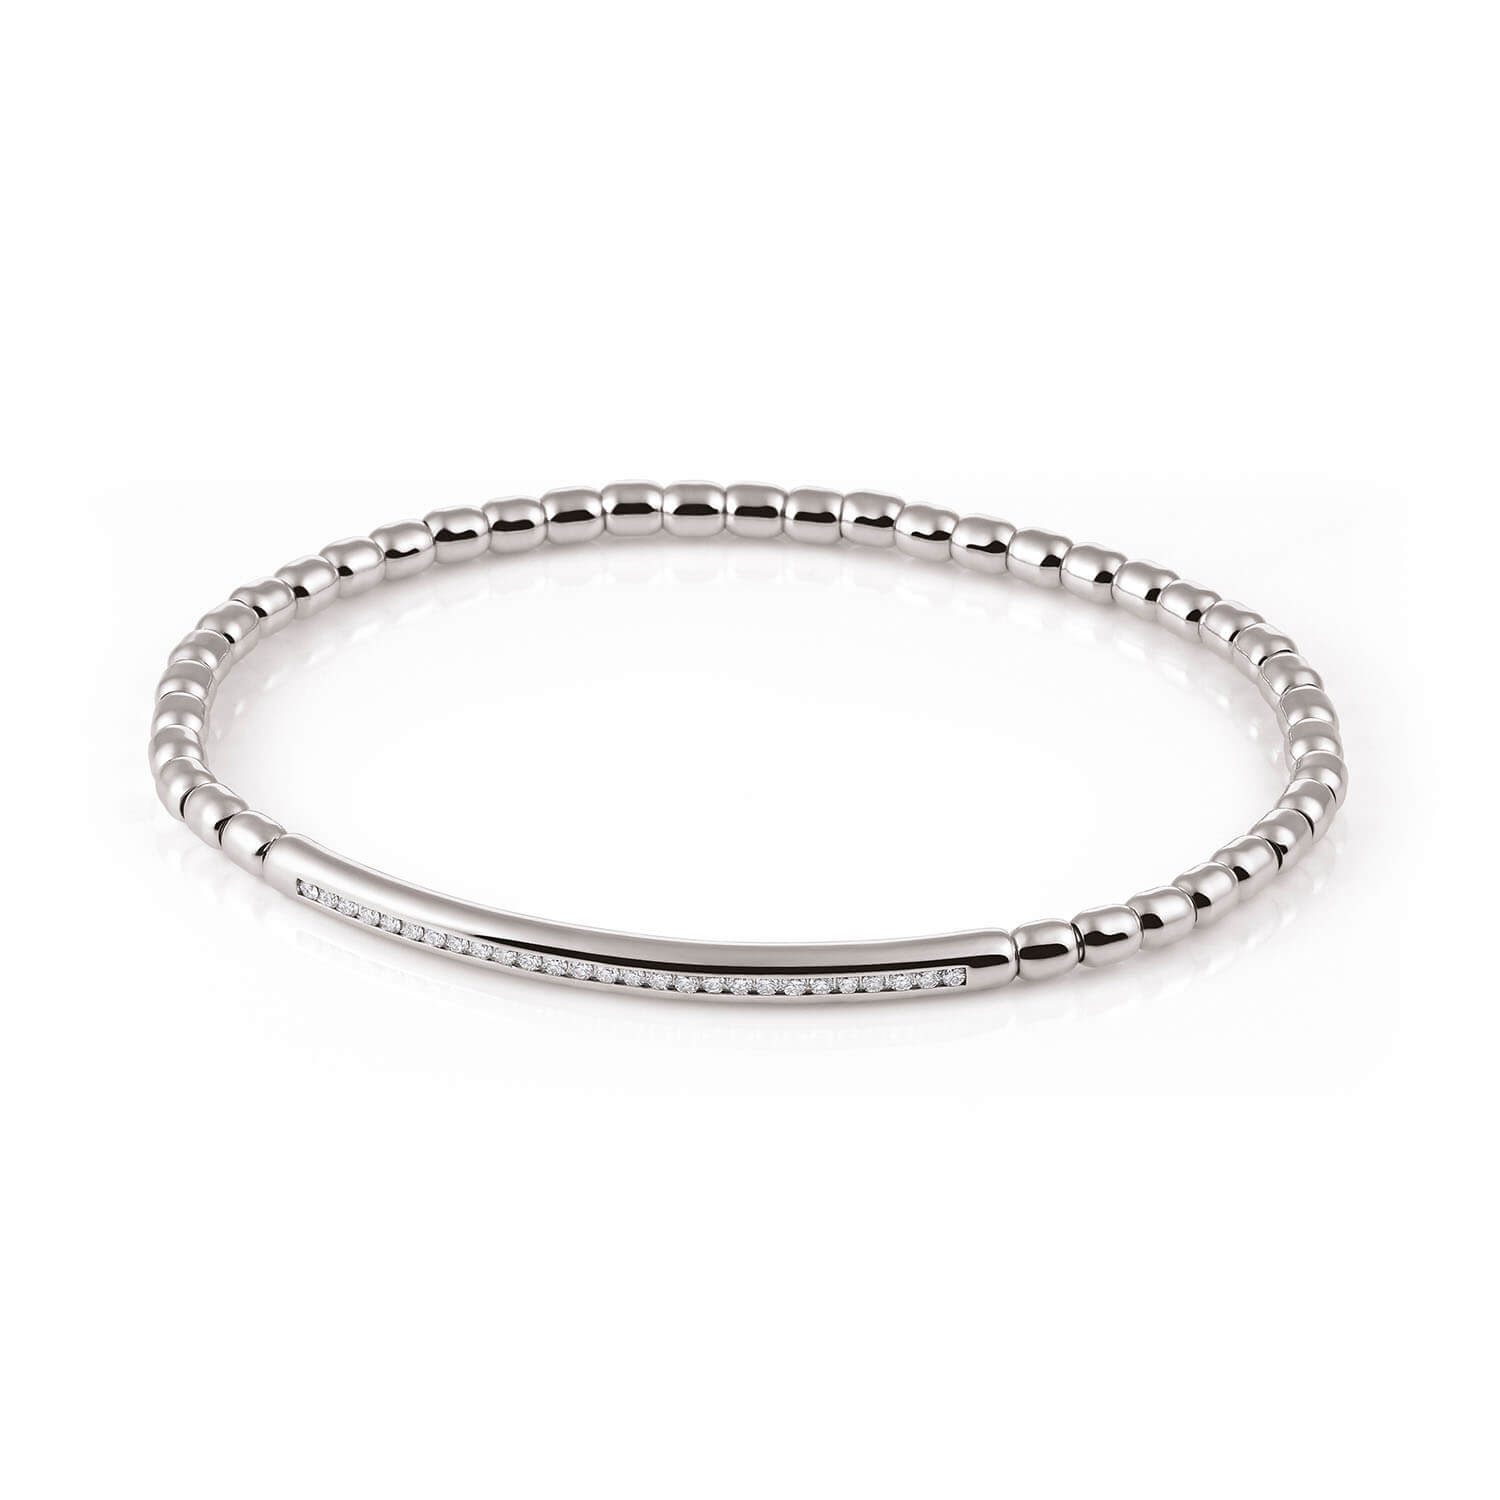 Al Coro Stretchy Men's Bracelet in 18k White Gold with Diamonds - Orsini Jewellers NZ